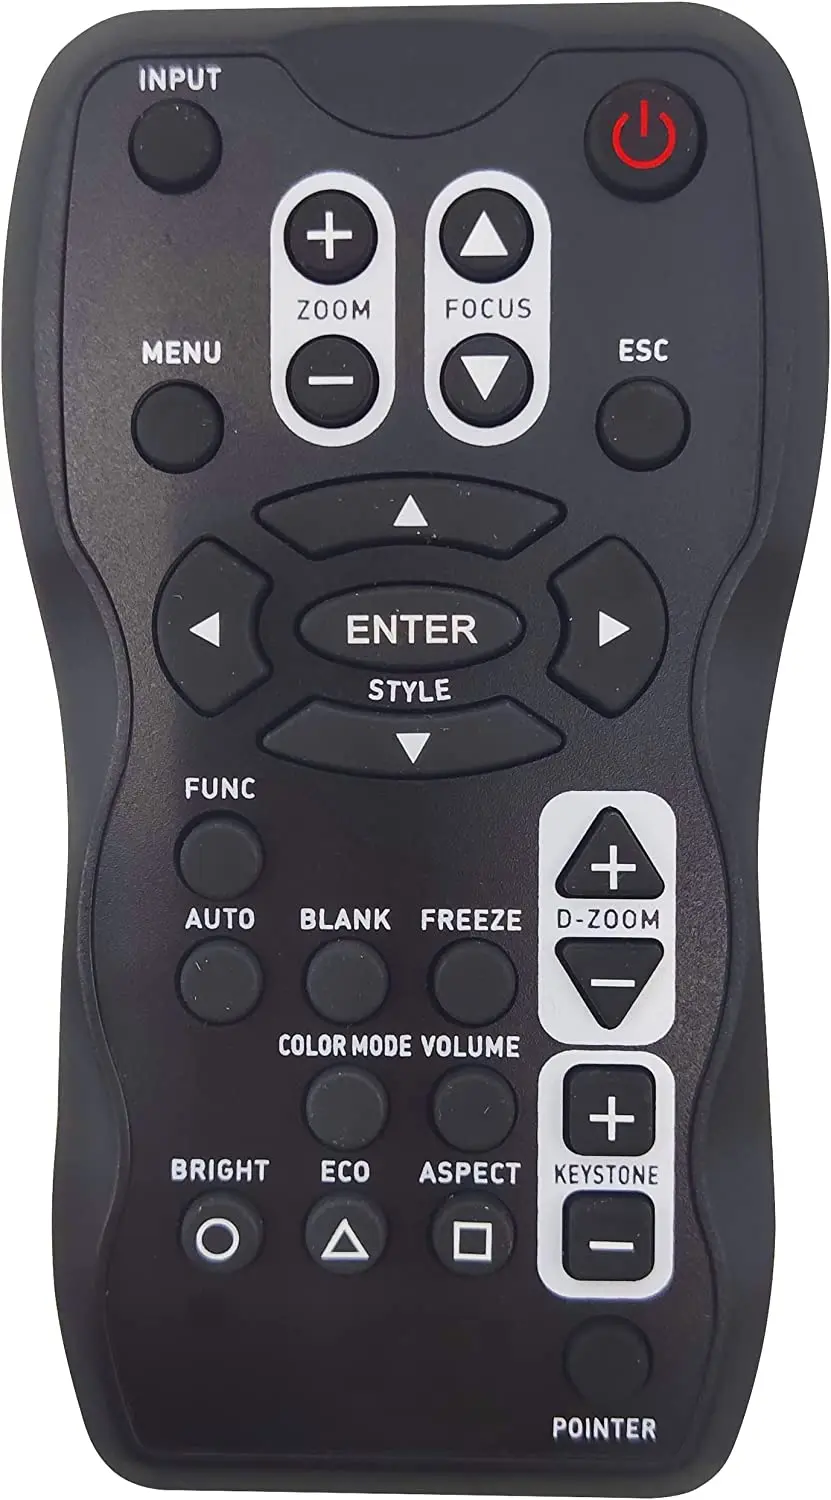 

Remote Control for Casio Projectors XJ-A130 XJ-A135 XJ-A140 XJ-A145 XJ-A150 XJ-A155 XJ-A230 XJ-A235 XJ-A240 XJ-A245 XJ-A250